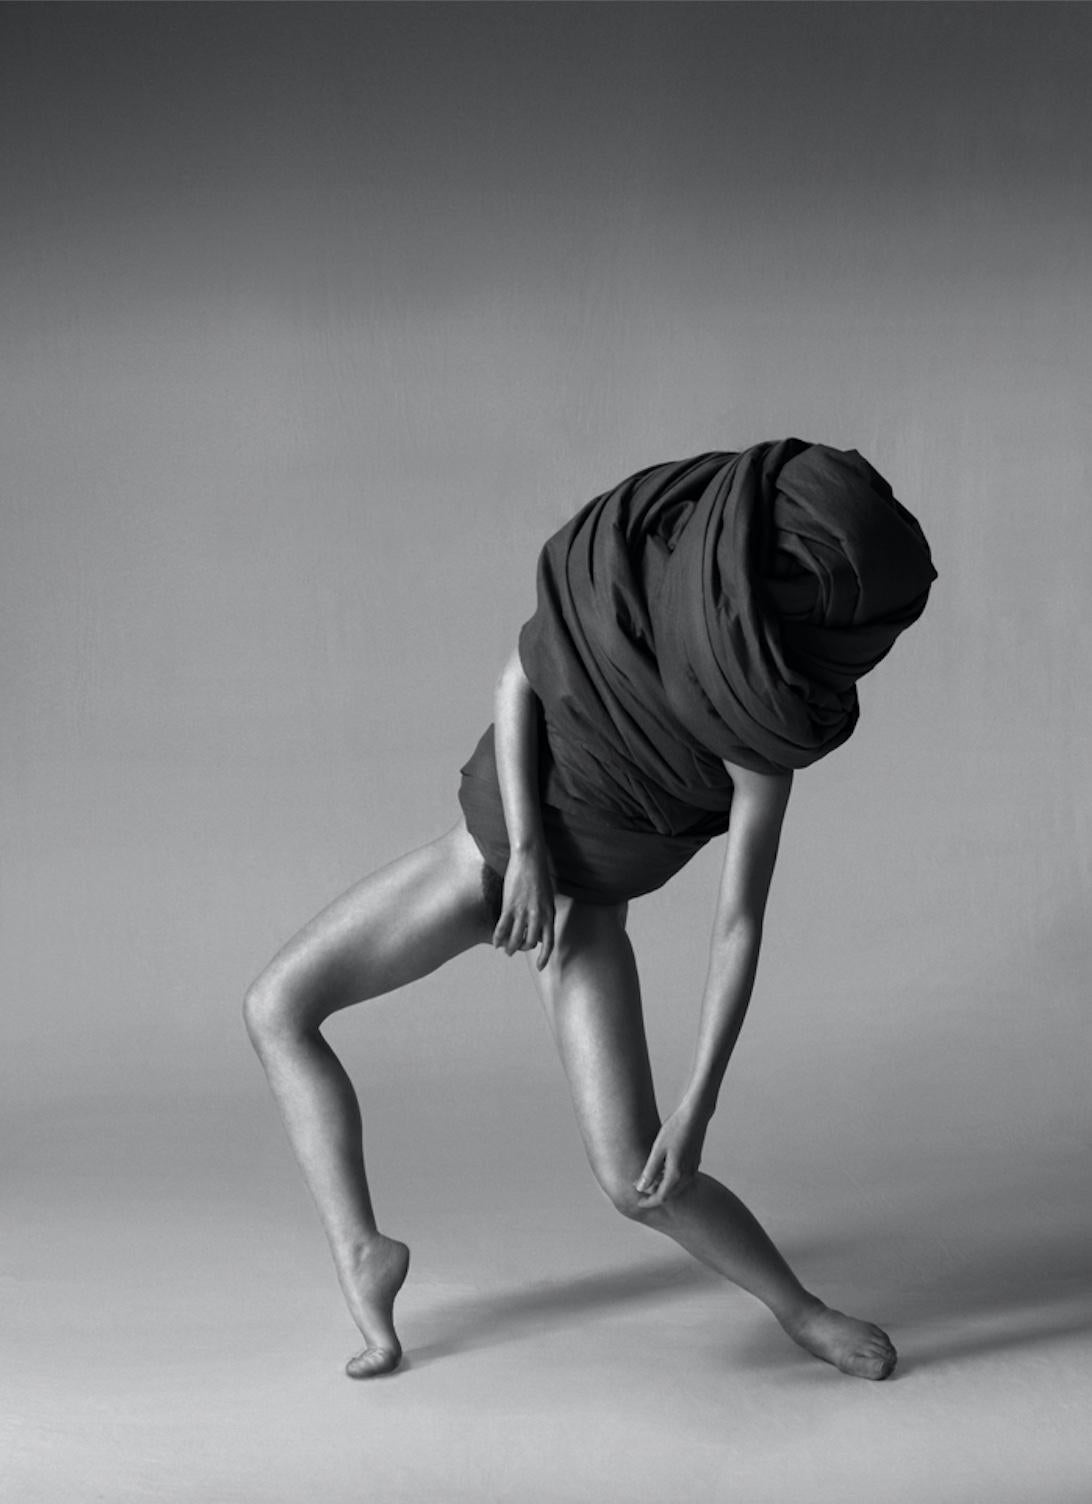 168.07.12 est une photographie en noir et blanc à tirage limité de l'artiste contemporain Klaus Kampert, issue de la série intitulée Wrapped. Dans cette série, Klaus Kampert utilise du tissu pour recouvrir partiellement ses modèles. Les poses